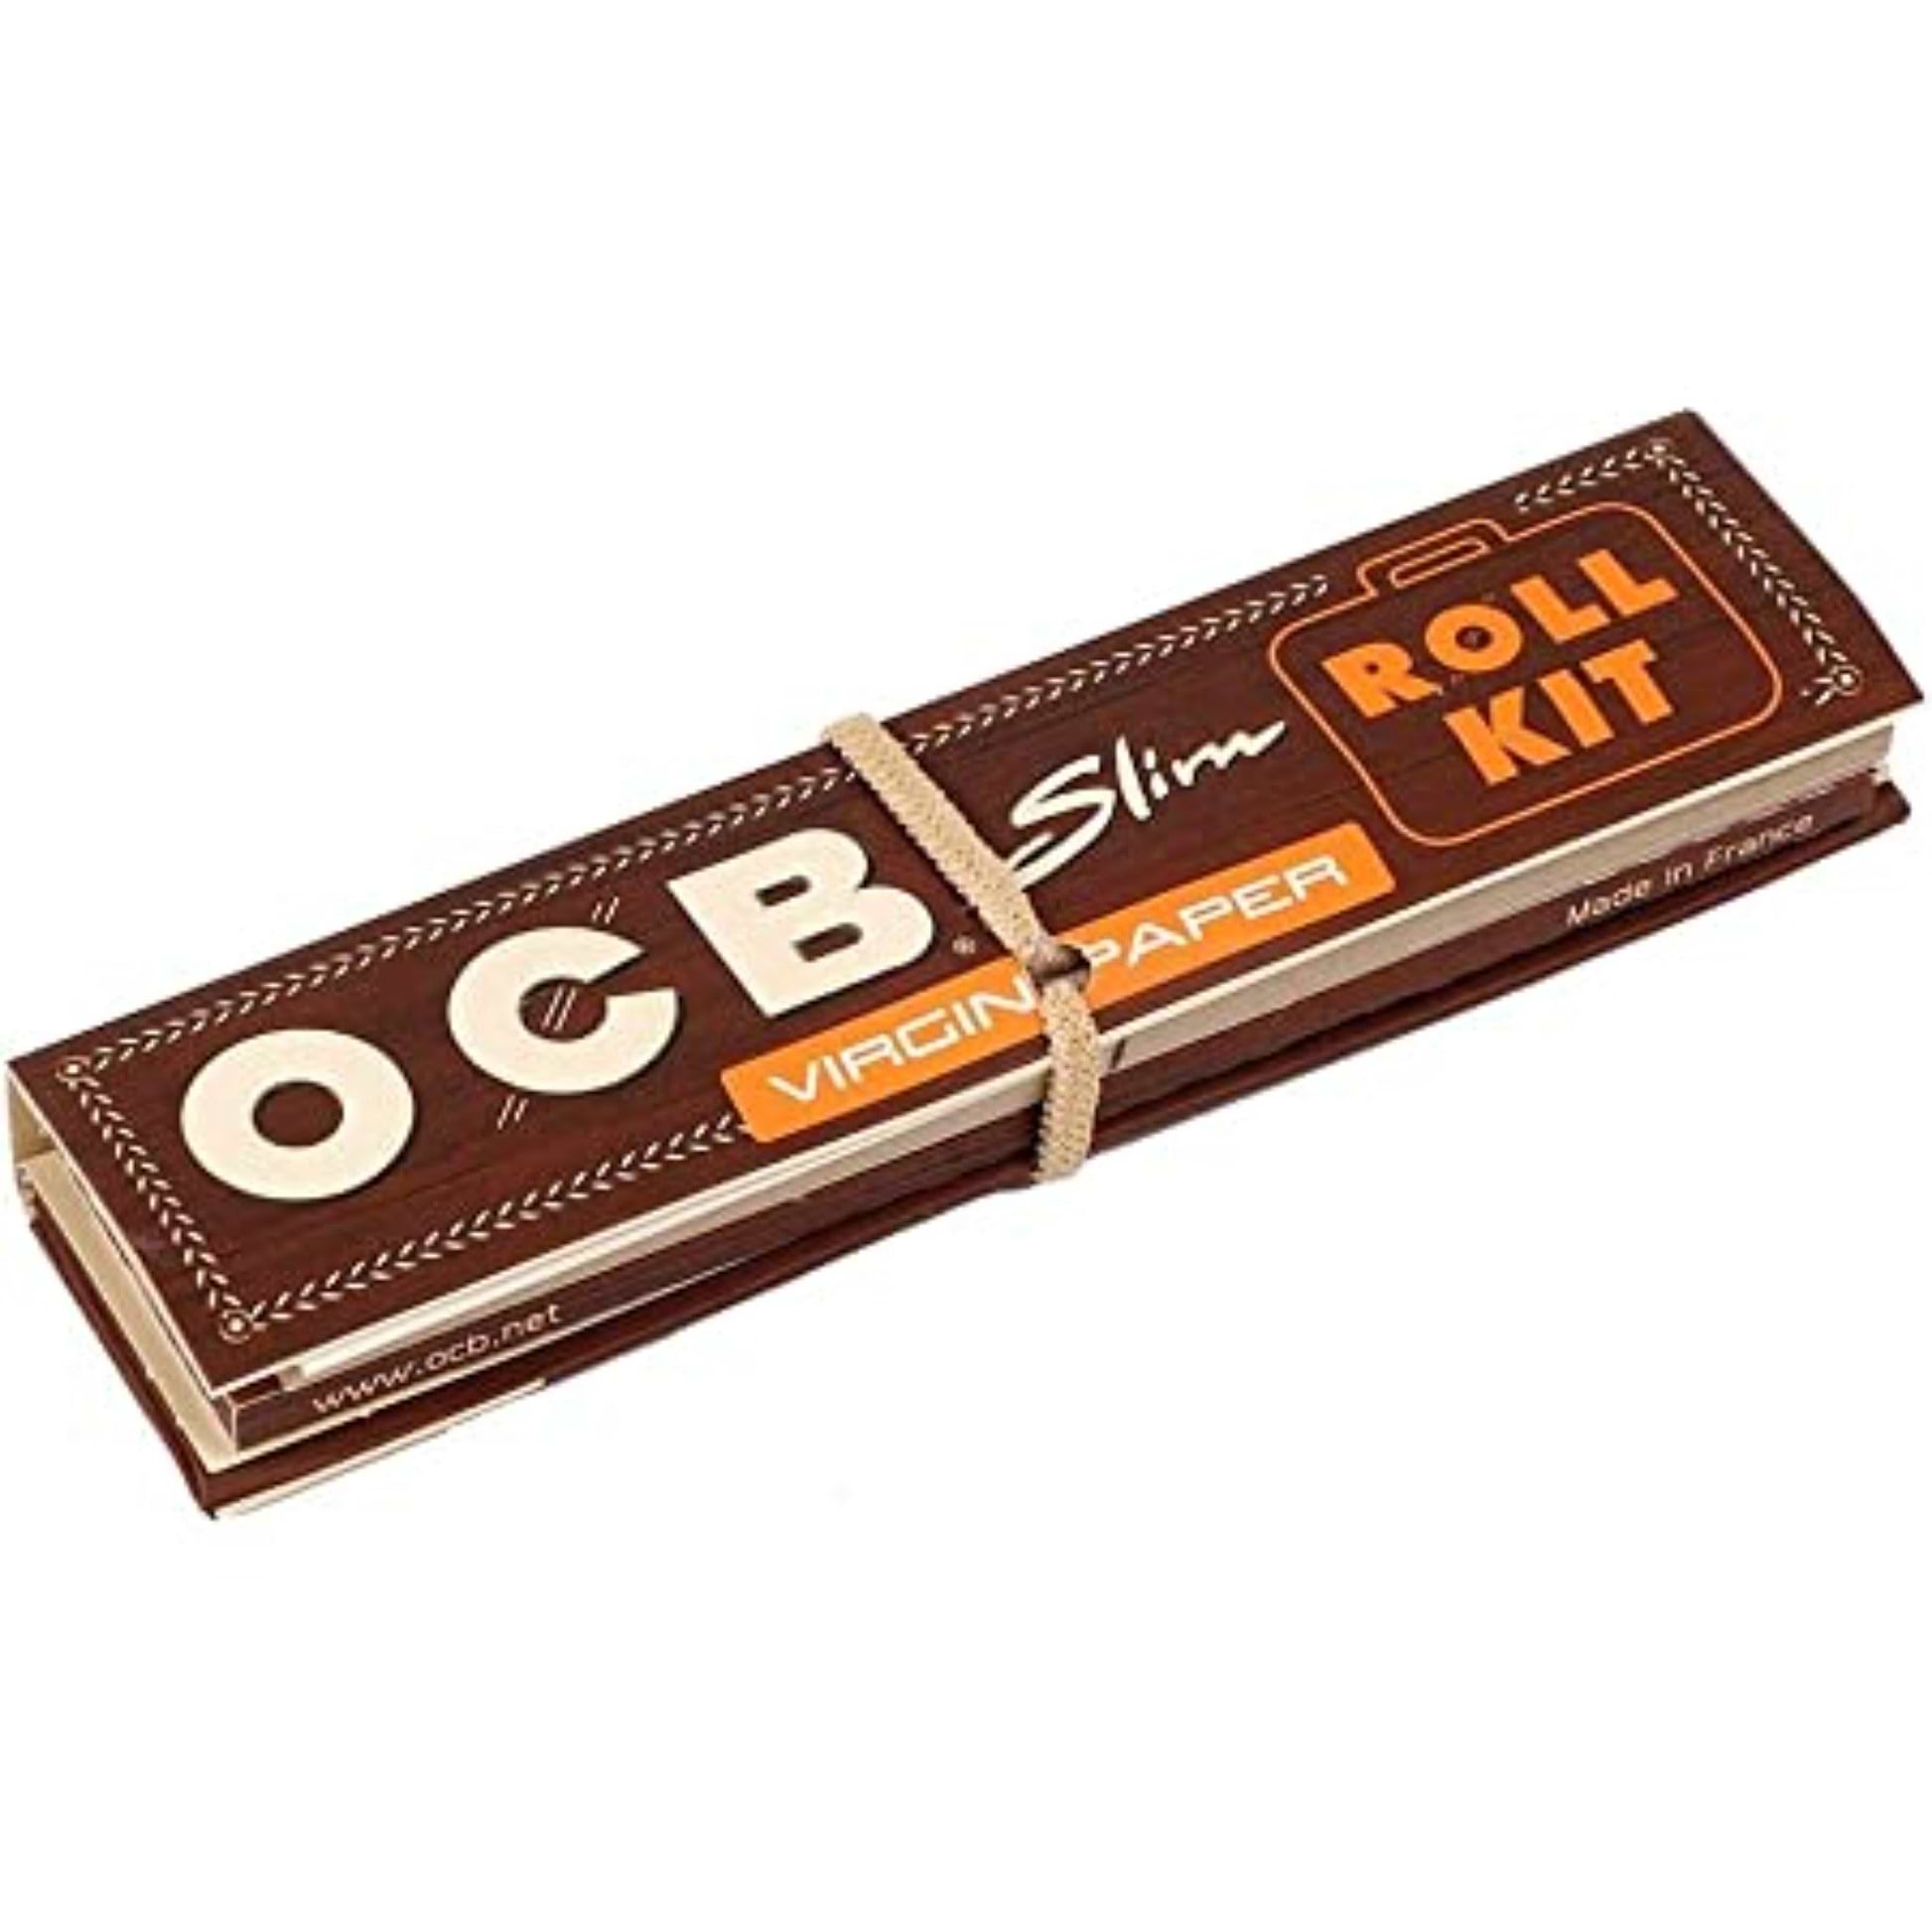 OCB Virgin Roll Kit